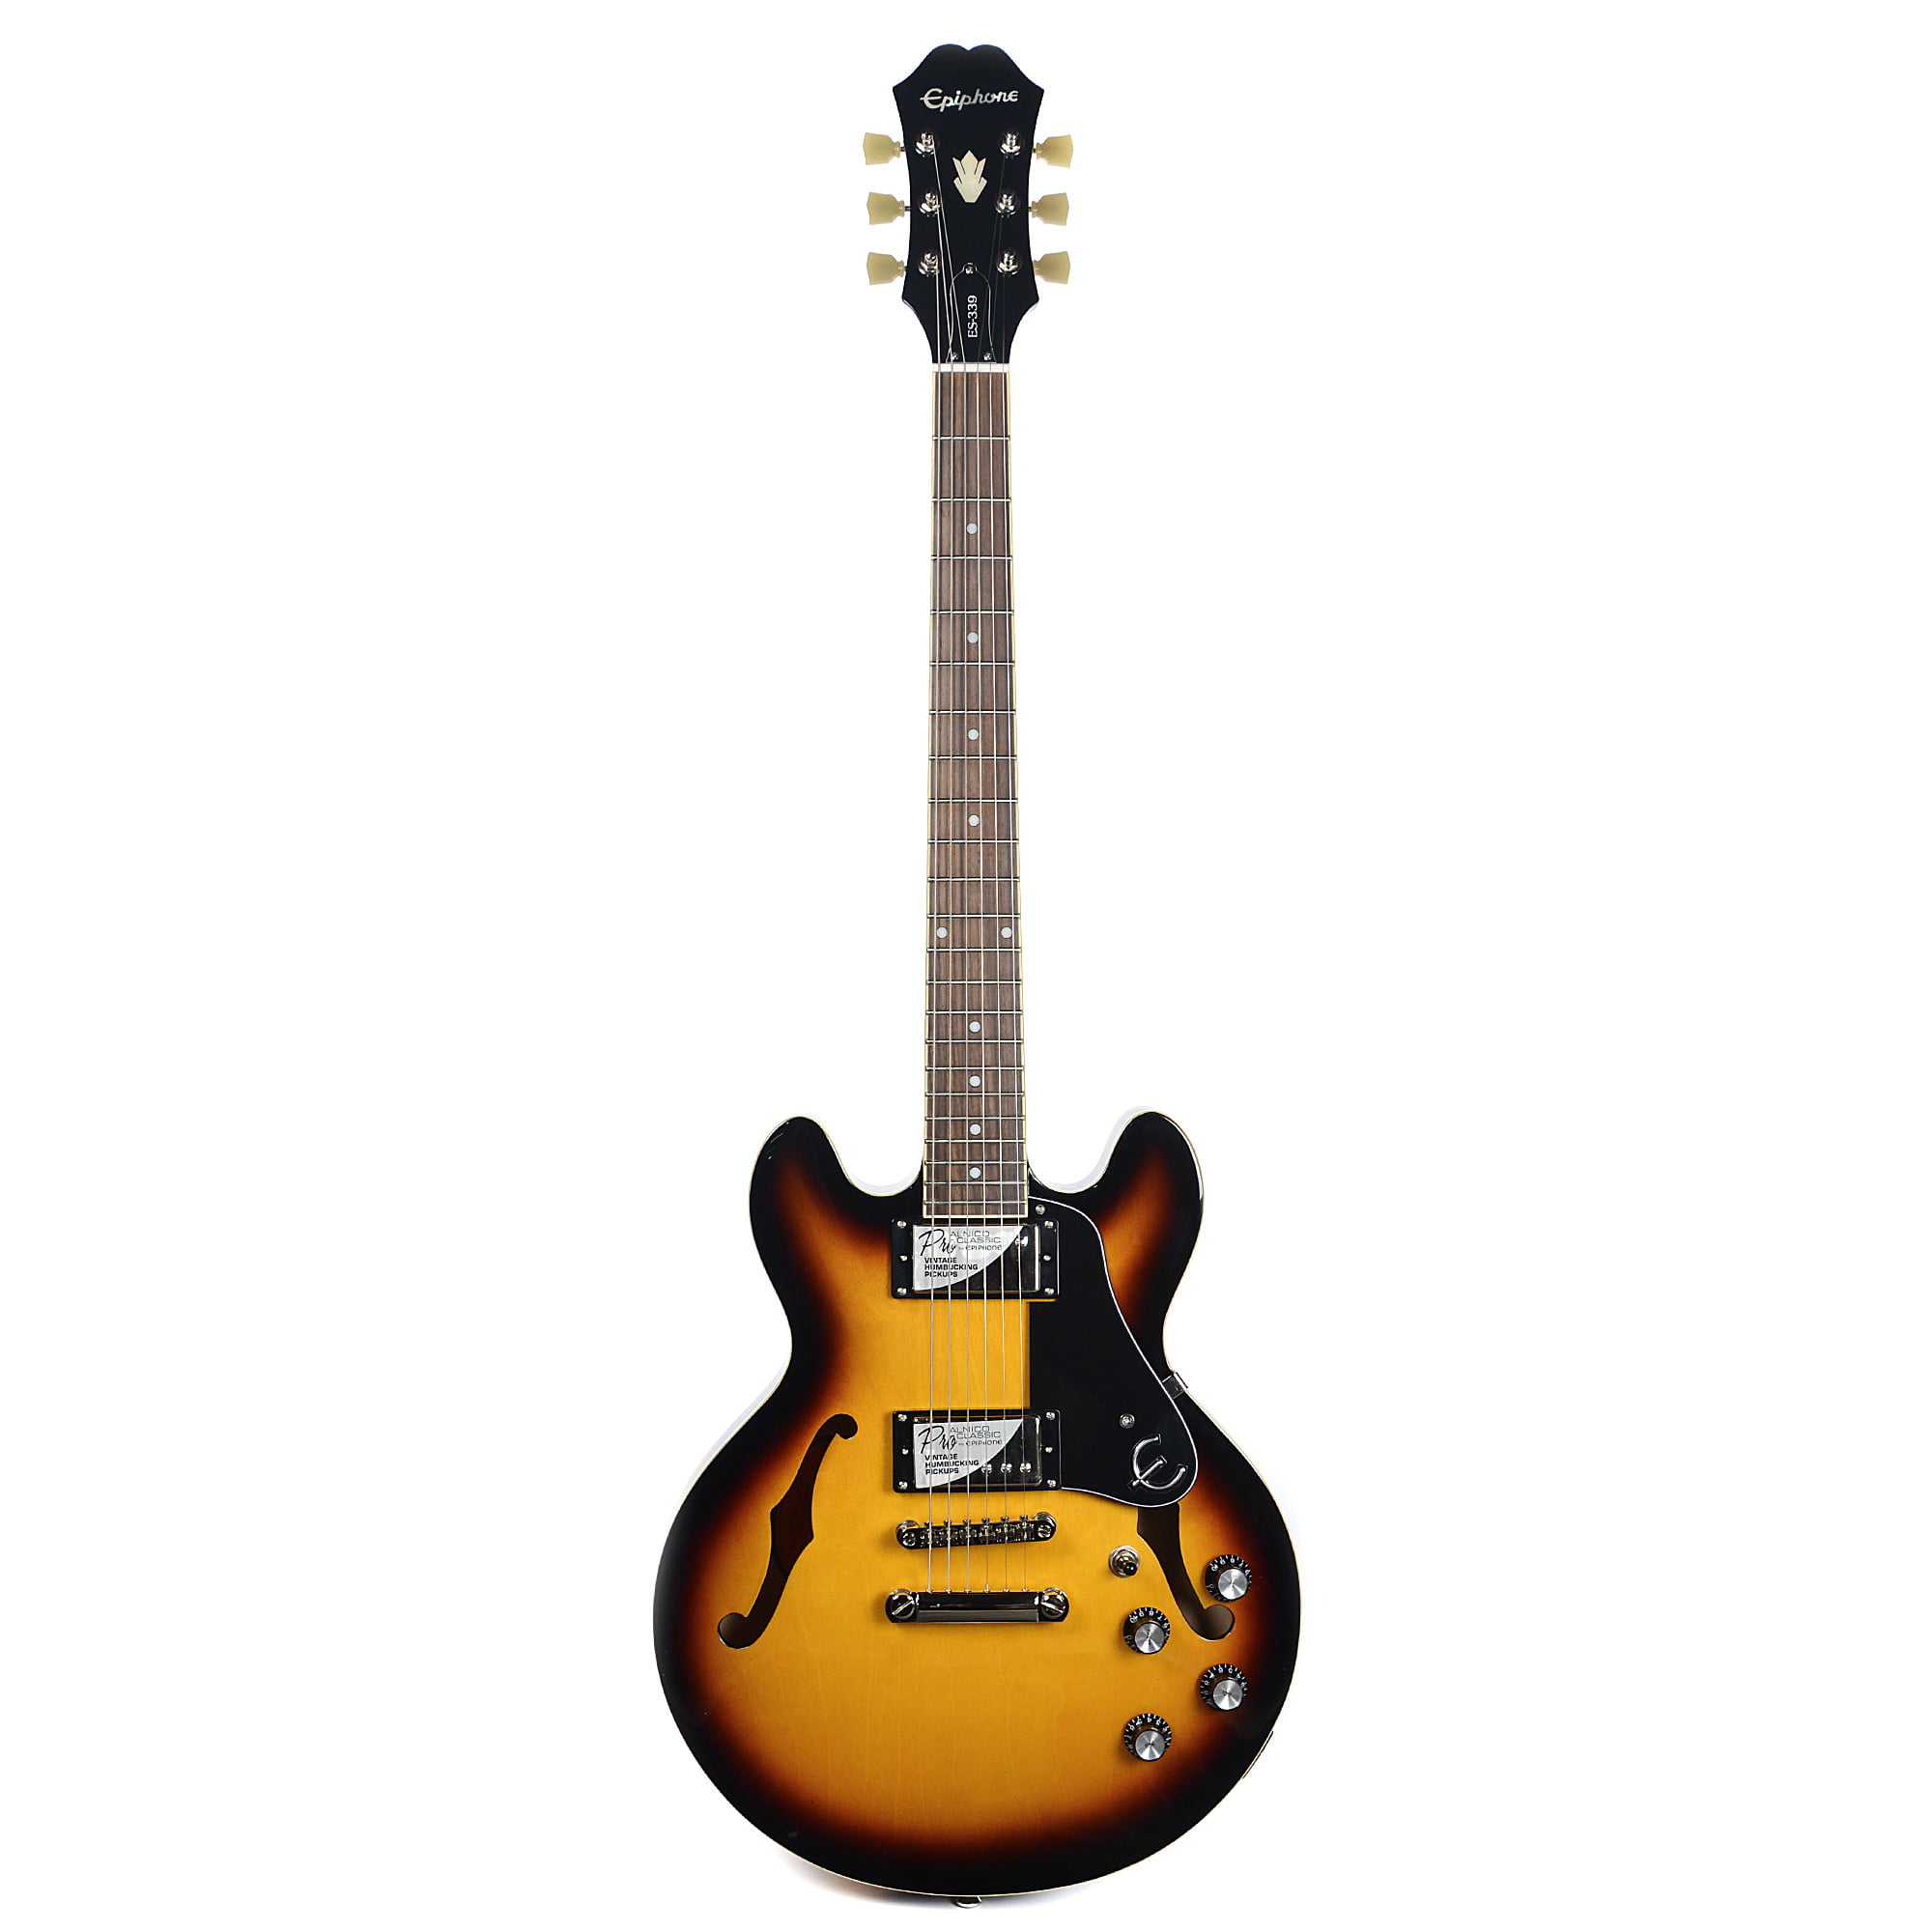 Epiphone ES-339 Electric Guitar - Walmart.com